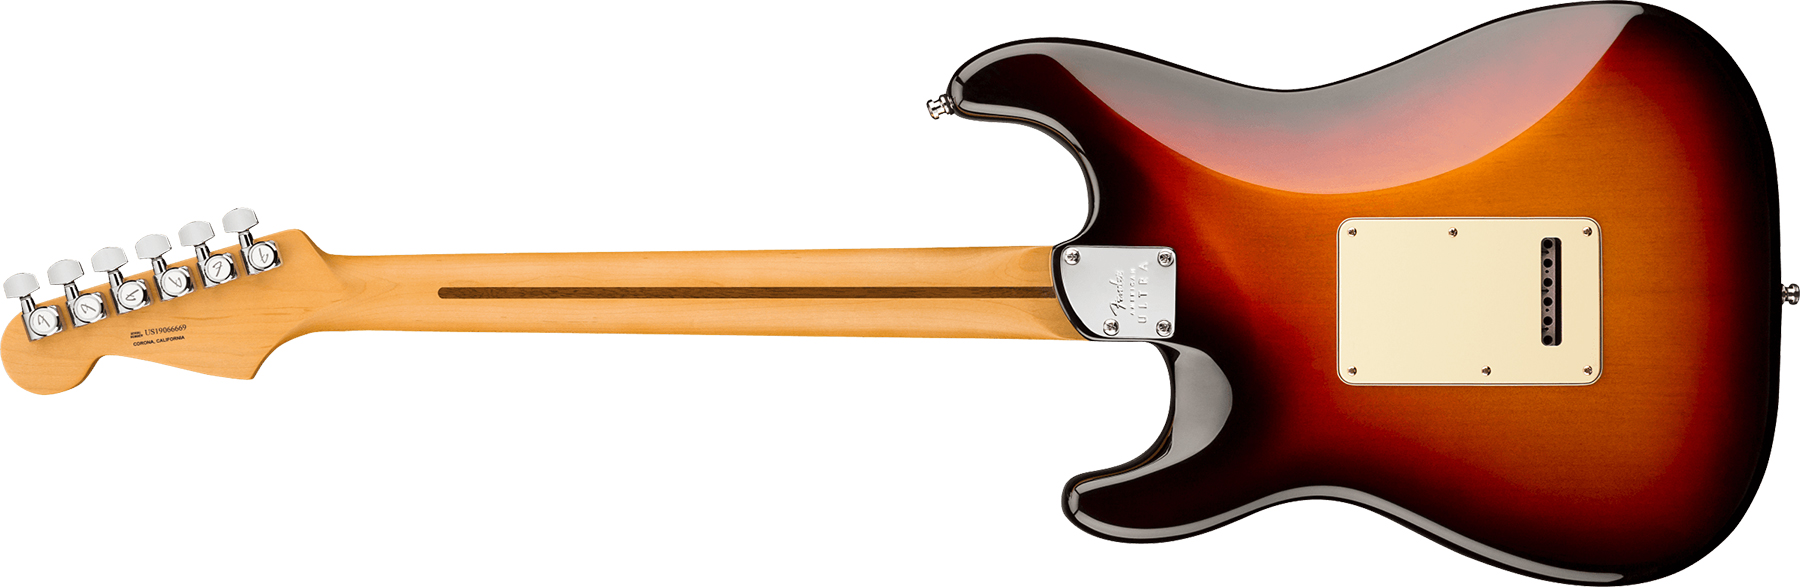 Fender Strat American Ultra Hss 2019 Usa Mn - Ultraburst - Elektrische gitaar in Str-vorm - Variation 1